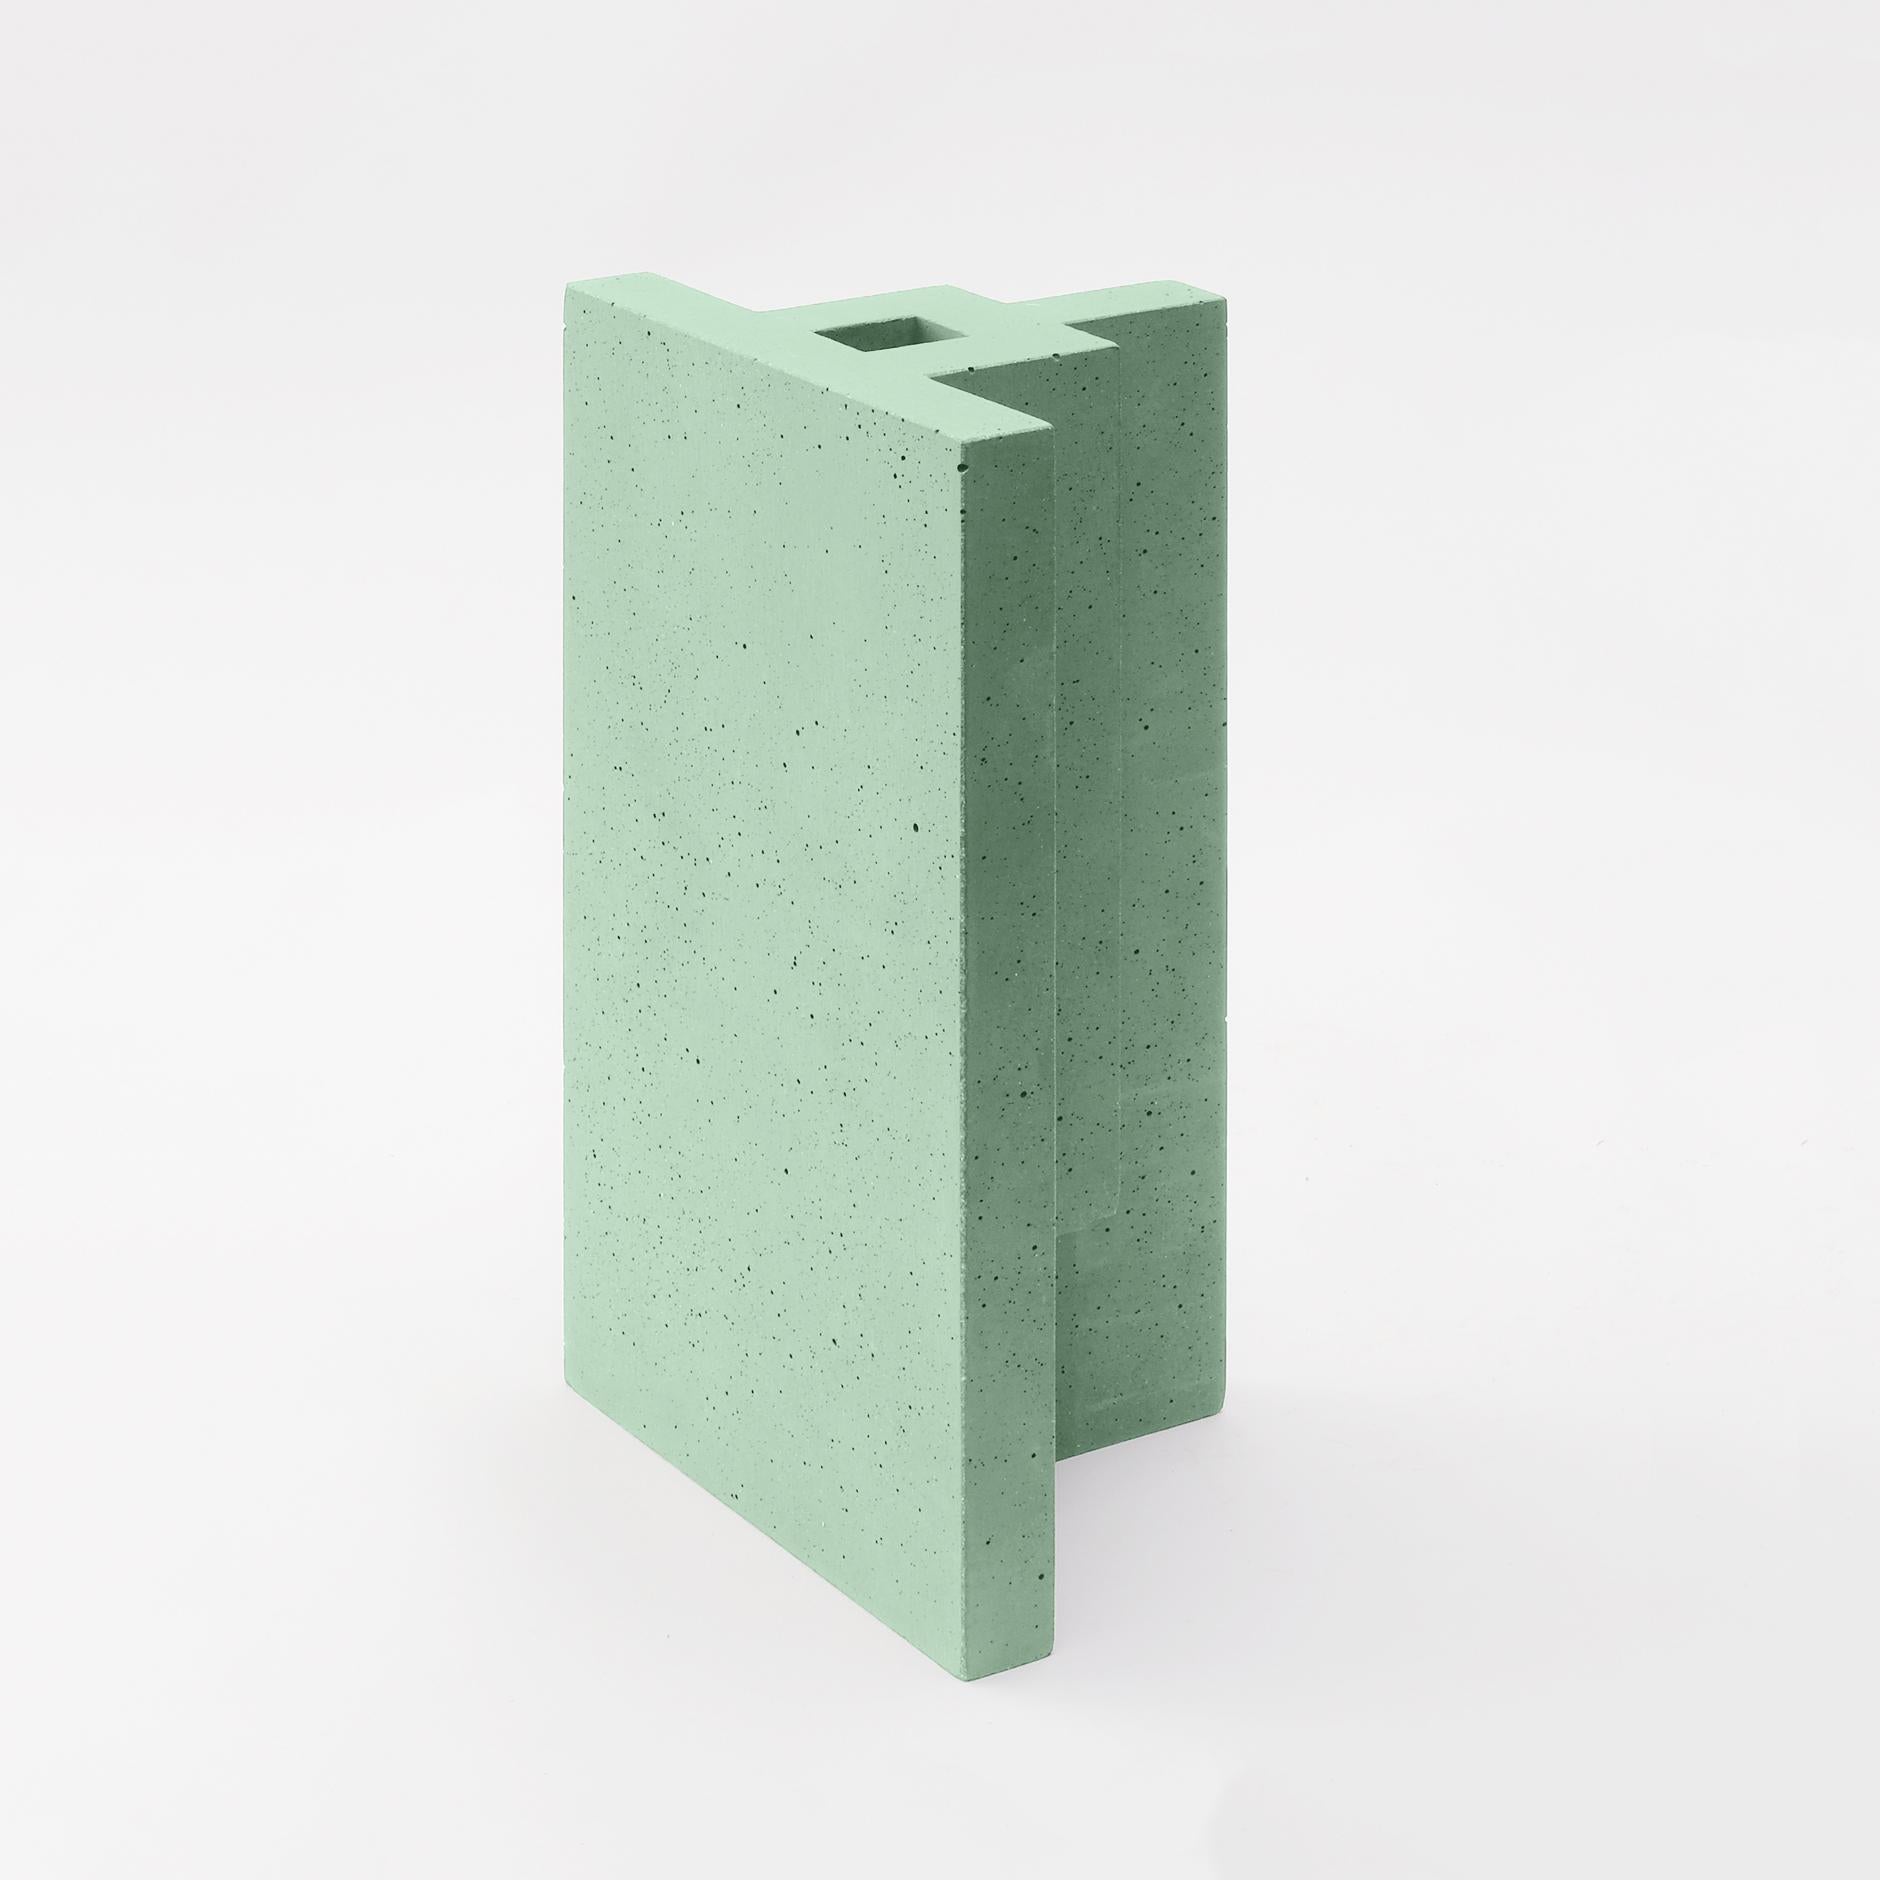 Chandigarh I - Vase design vert menthe moulé en ciment de Paolo Giordano
Chandigarh I - Vert Menthe

Chandigarh est une collection de vases inspirés de la ville homonyme conçue par Le Corbusier, qui l'a imaginée et créée à partir de rien en Inde.